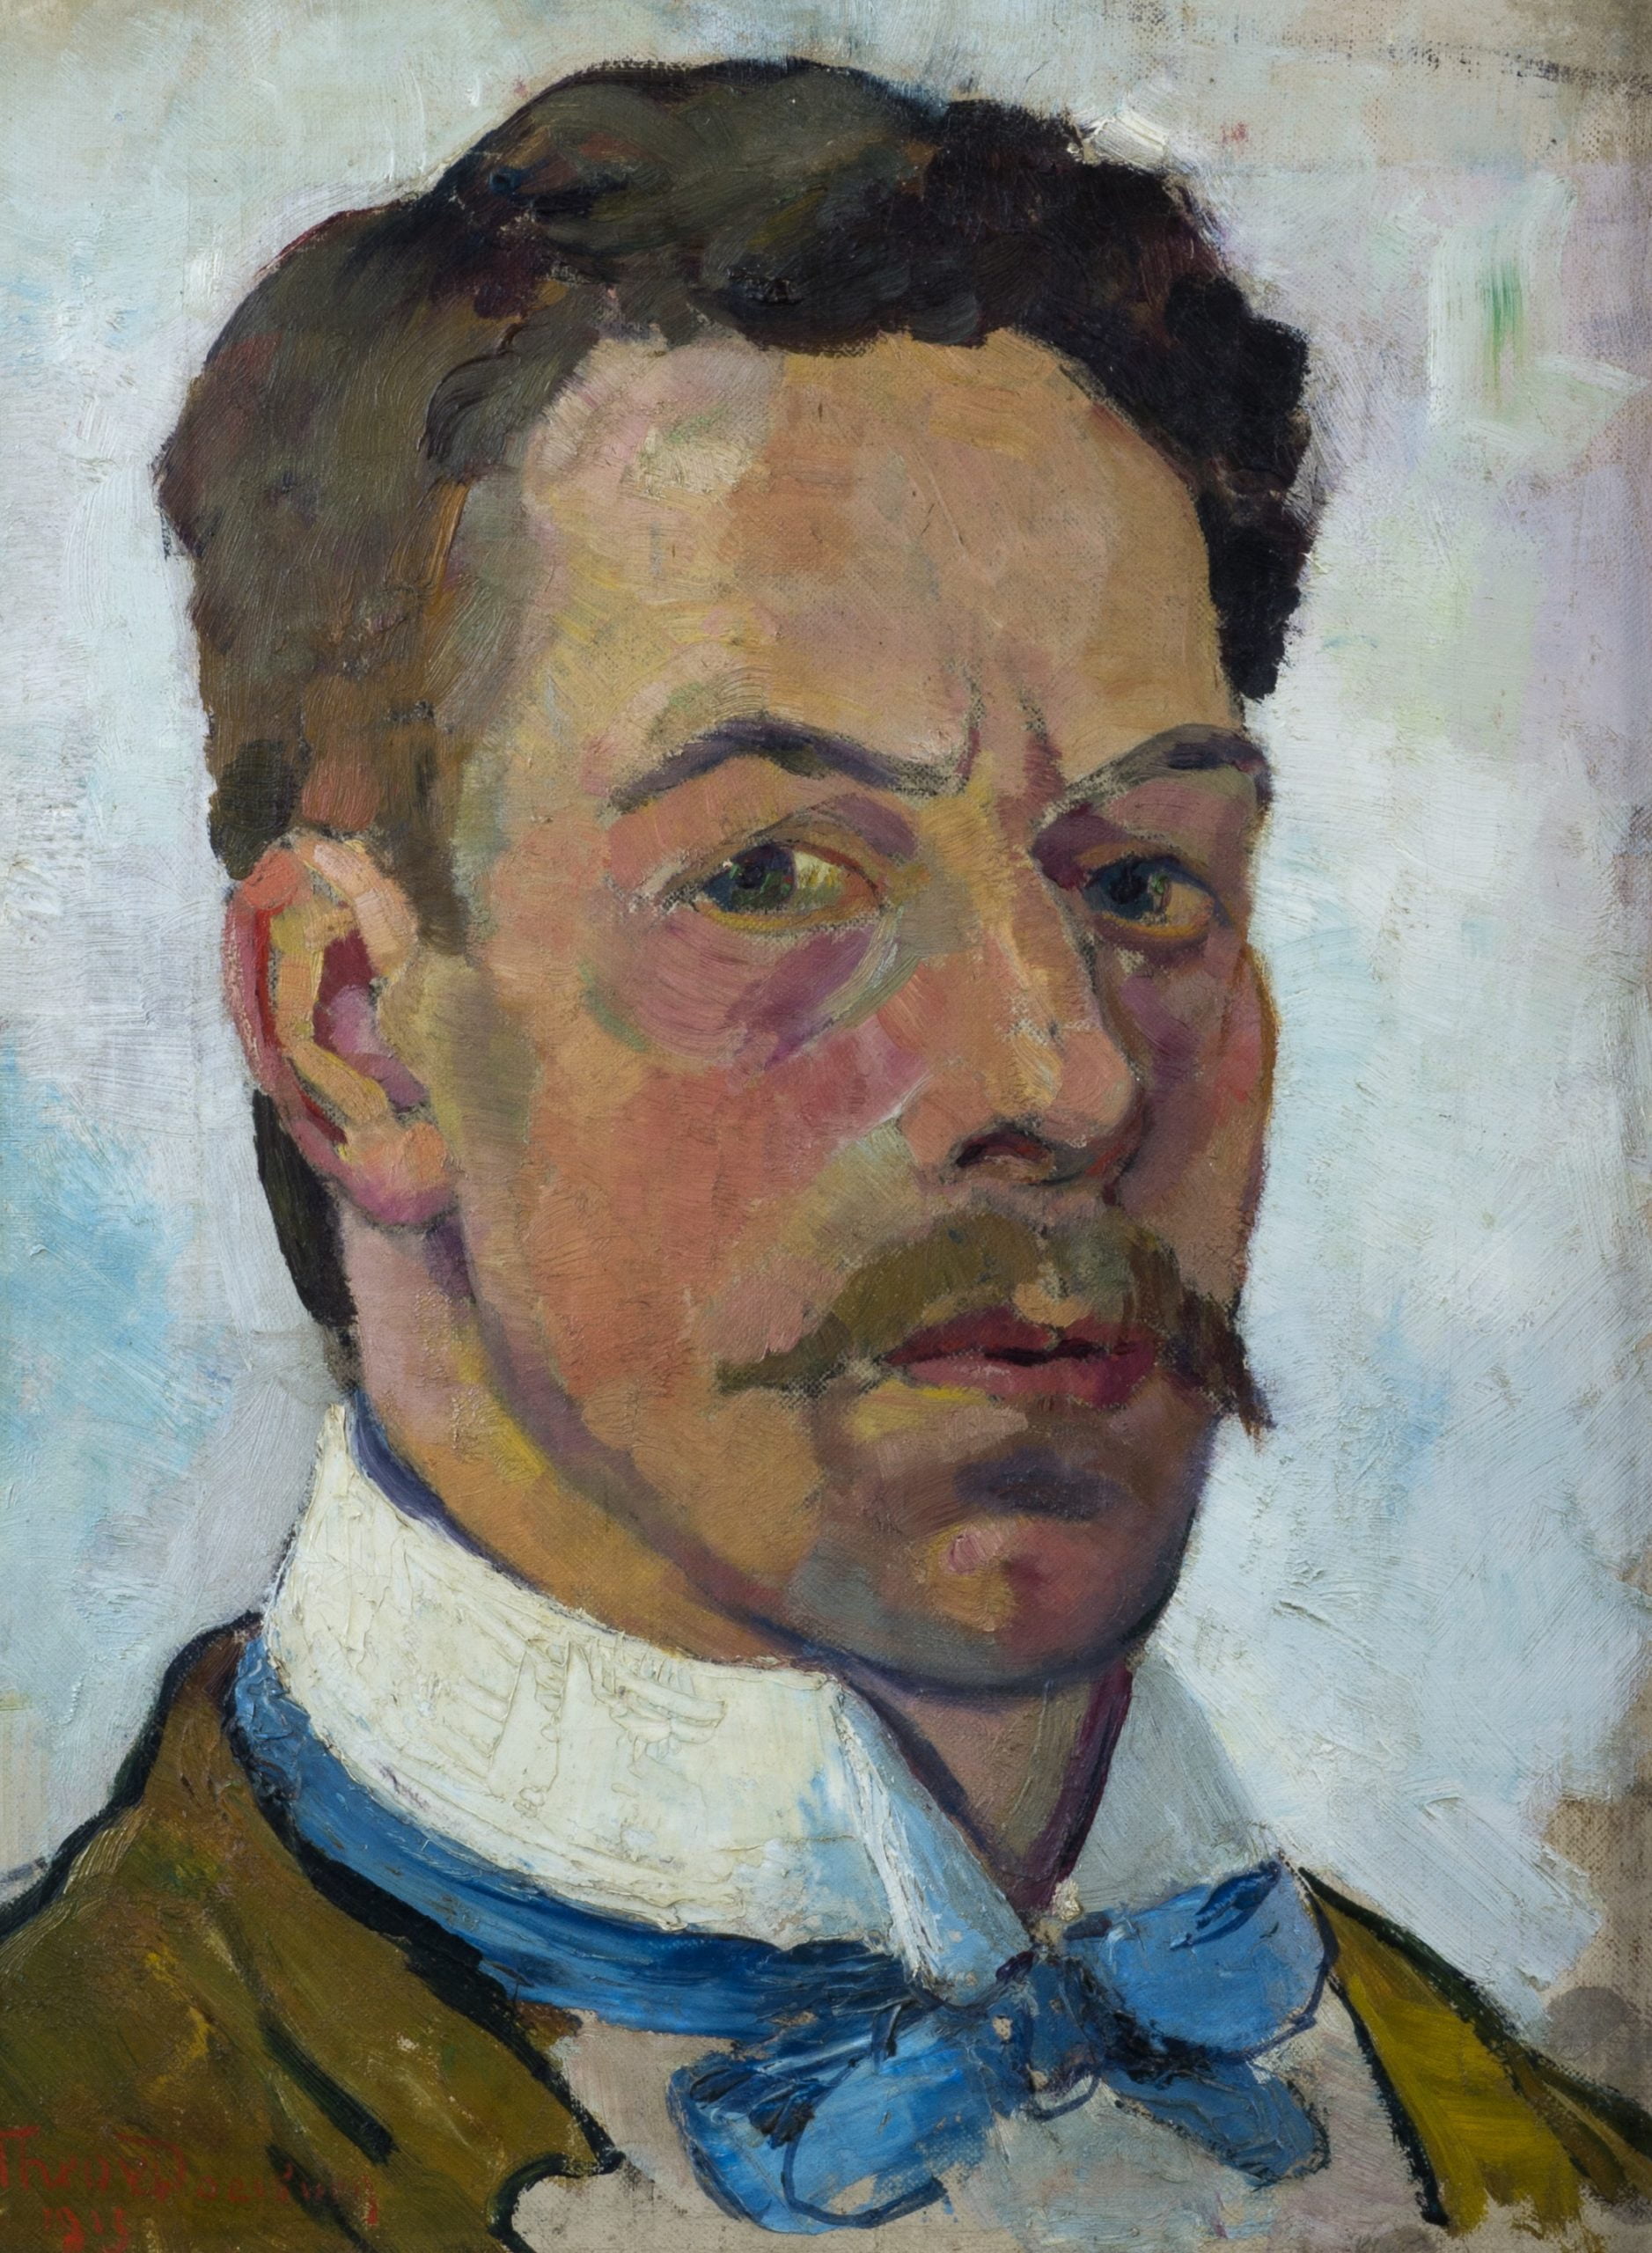 Theo van Doesburg, zelfportret op 30-jarige leeftijd, 1913, olieverf op doek, Rijksdienst voor het Cultureel Erfgoed